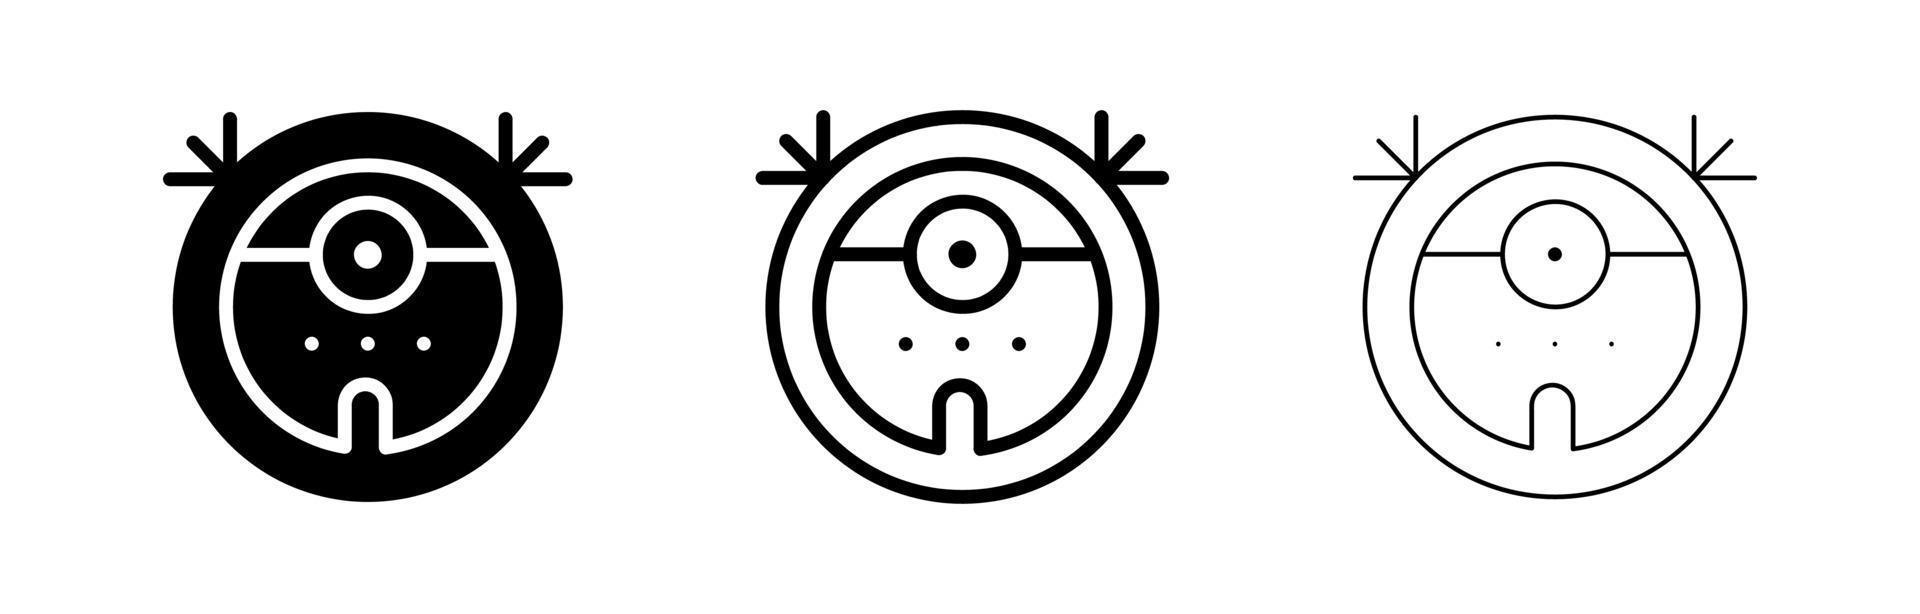 conjunto de ícones de aspirador de pó robô. elemento simples desenho do ícone do conceito de casa inteligente. robô aspirador de pó editável web e logotipo assinam design de símbolo em fundo branco. vetor